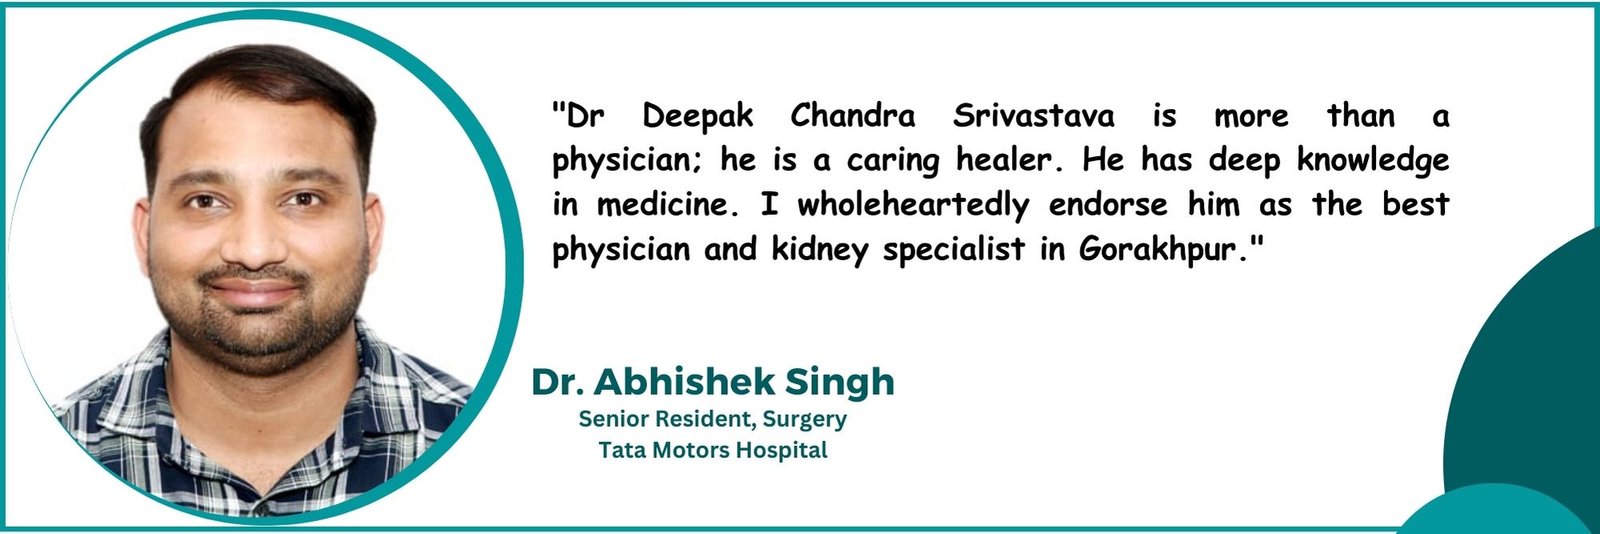 Dr Abhishek Singh Surgen tata motors hospital